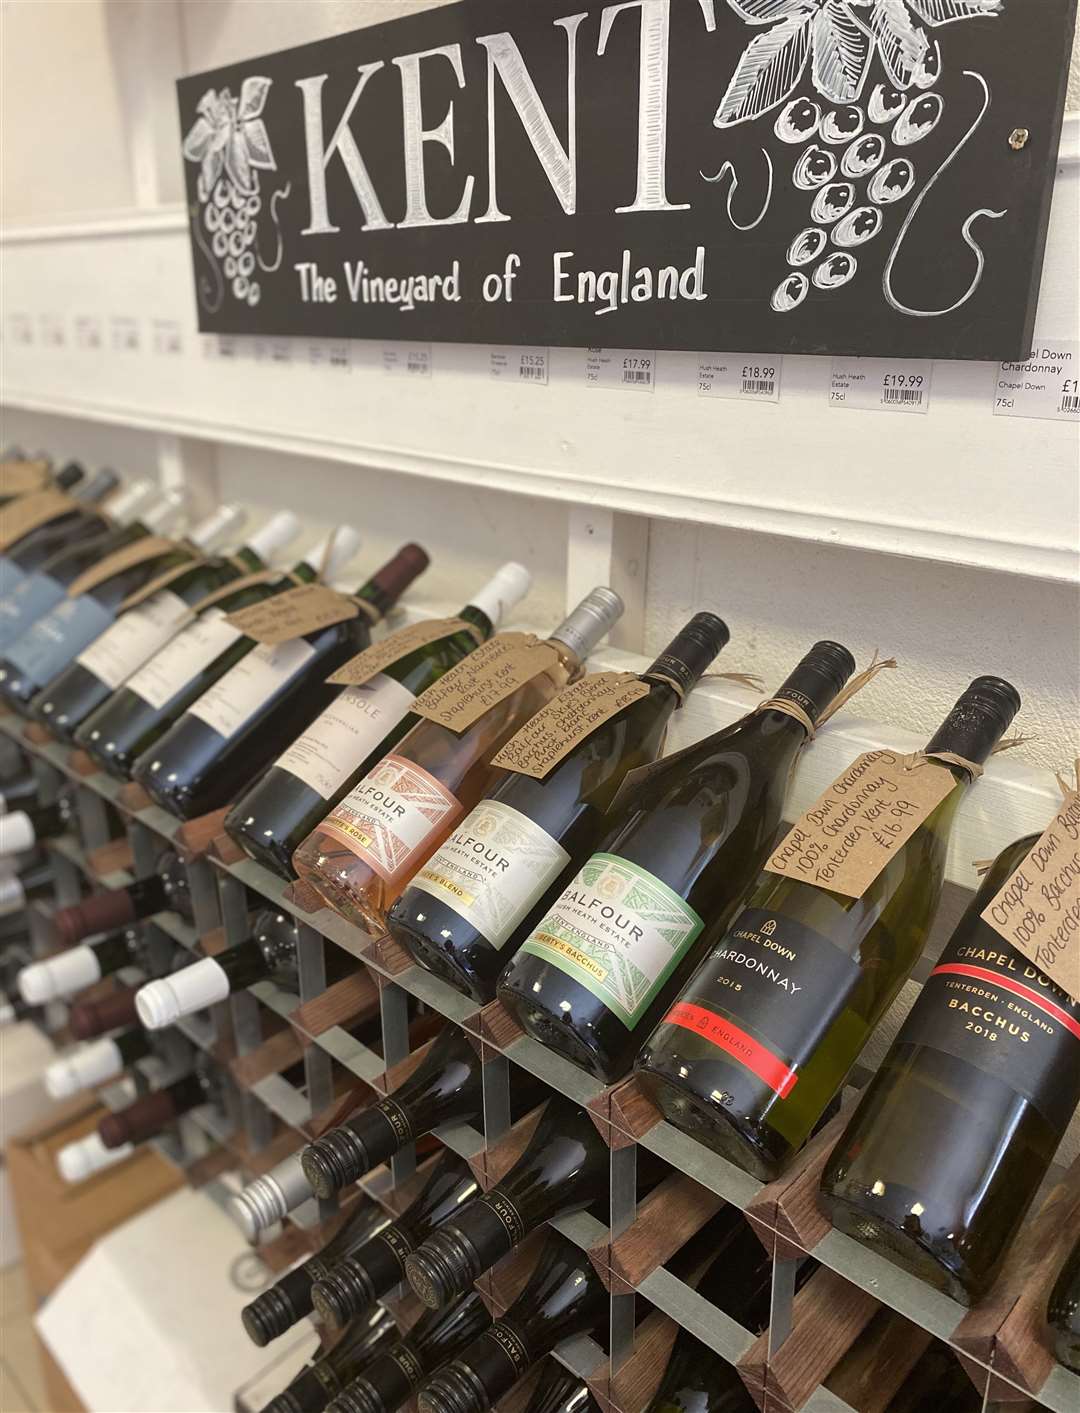 Kent wine stocked at Macknade